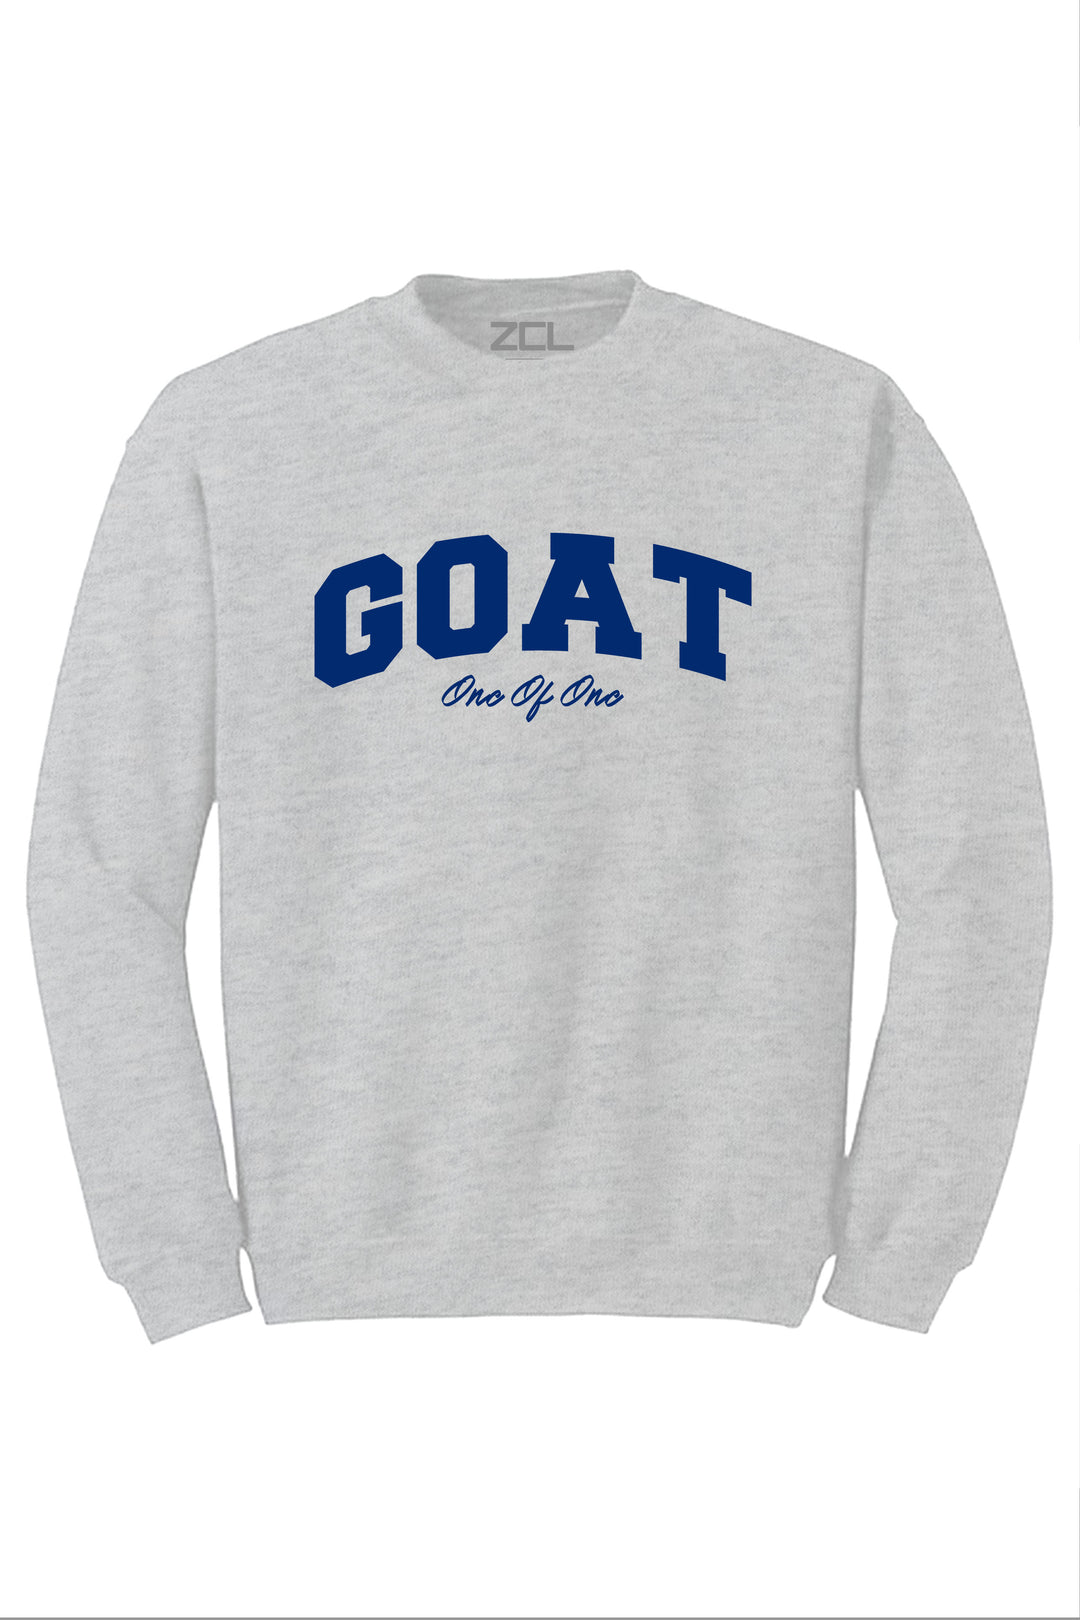 Goat Crewneck Sweatshirt (Royal Blue Logo) - Zamage